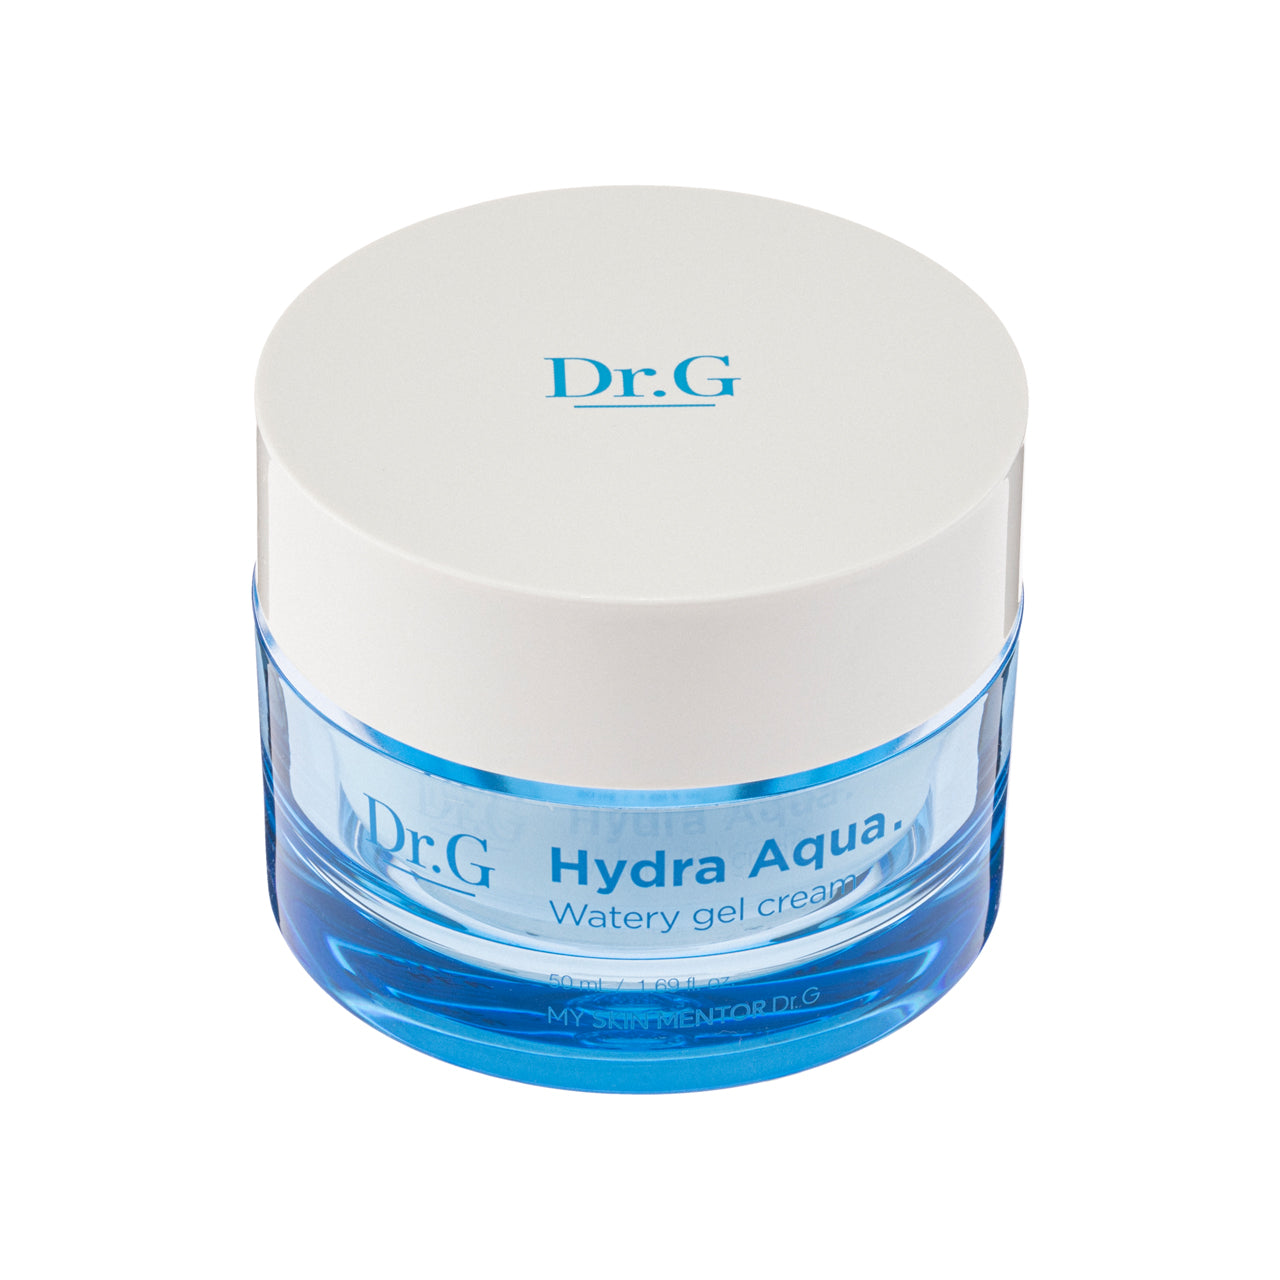 Dr.G Hydra Aqua Watery Gel Cream 50ml | Sasa Global eShop